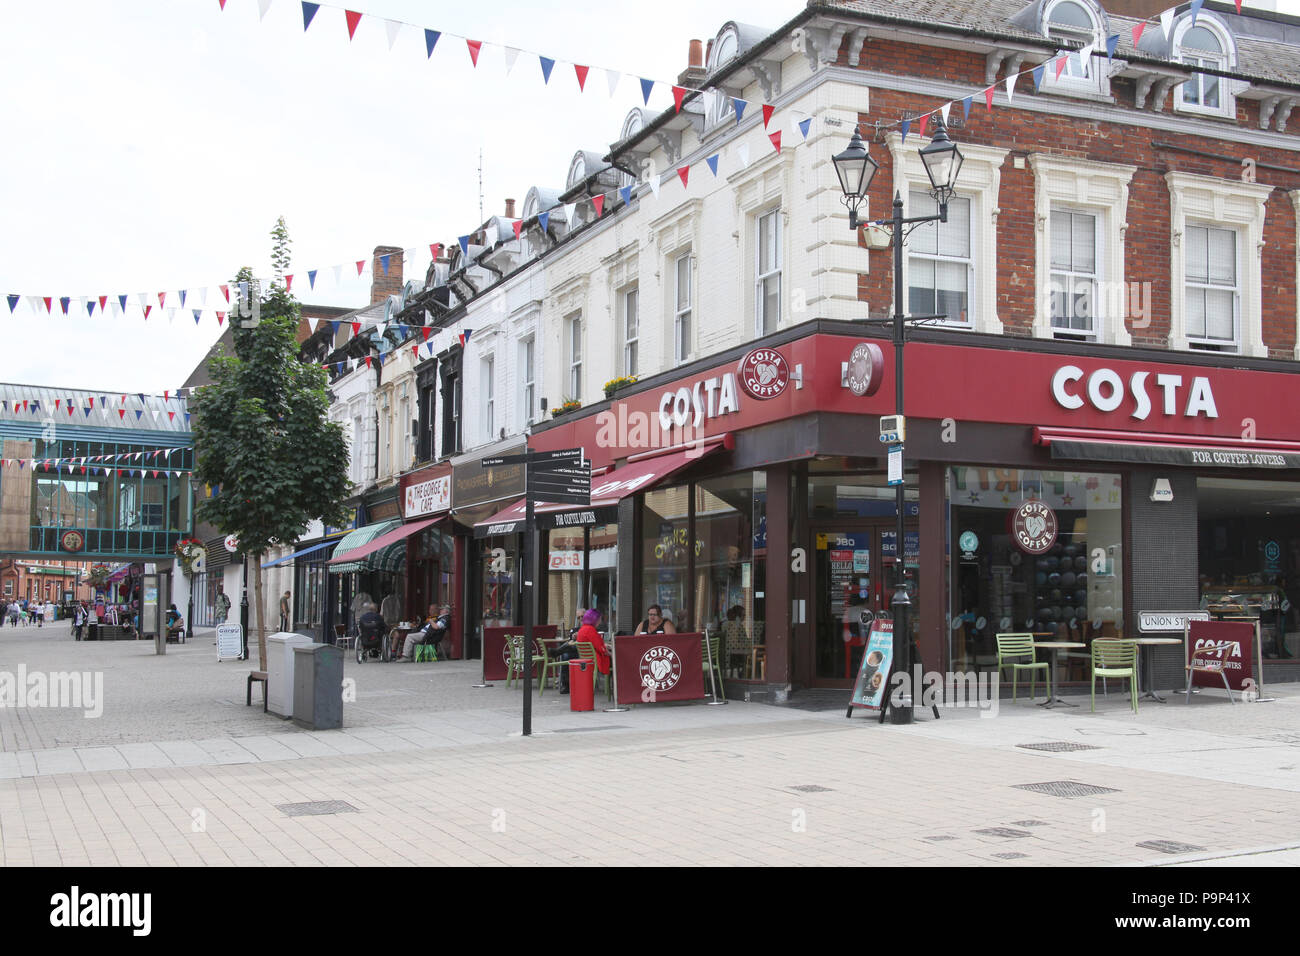 Das Einkaufsviertel in Aldershot, Großbritannien mit Costa Coffee prominent. Stockfoto